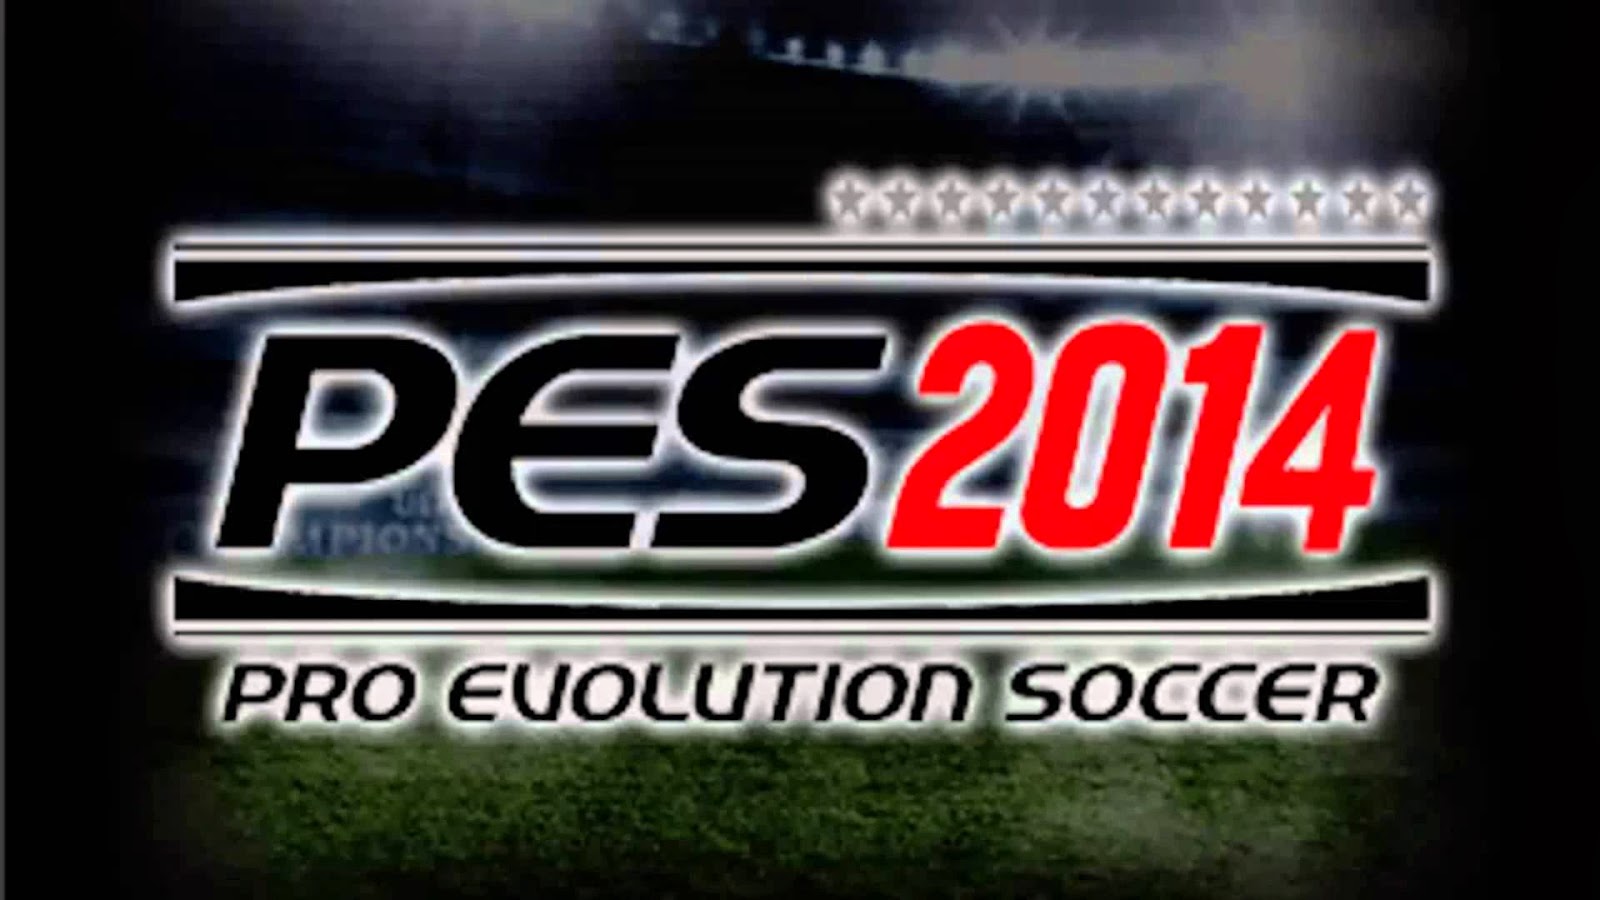 Download Game Pro Evolution Soccer 2014 Full Version